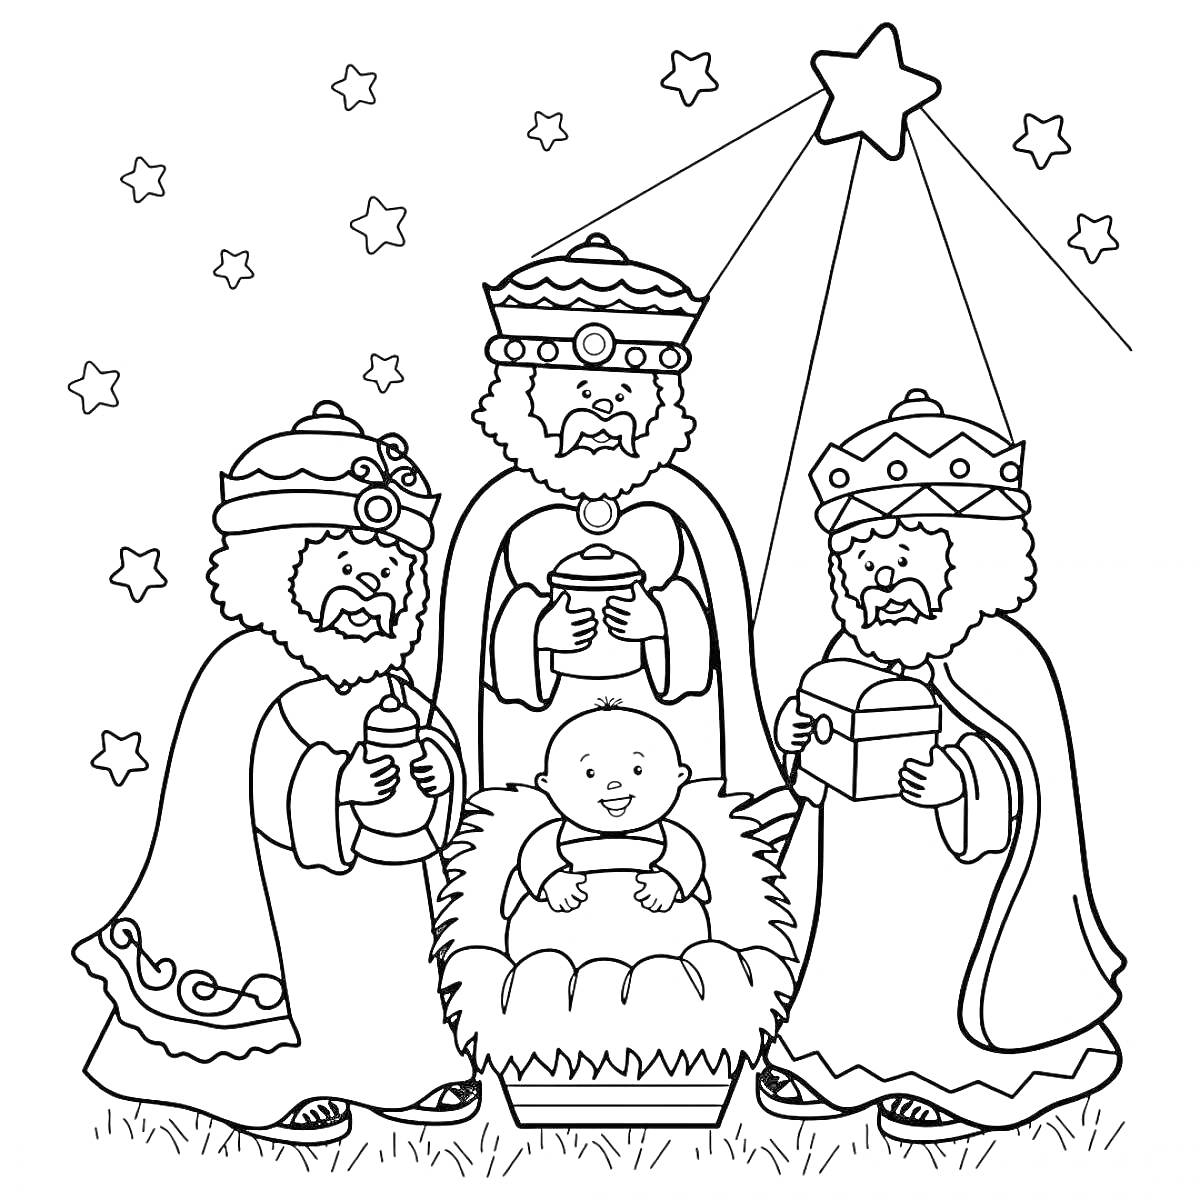 волхвы с подарками перед младенцем Иисусом под сияющей звездой, фон с маленькими звездами